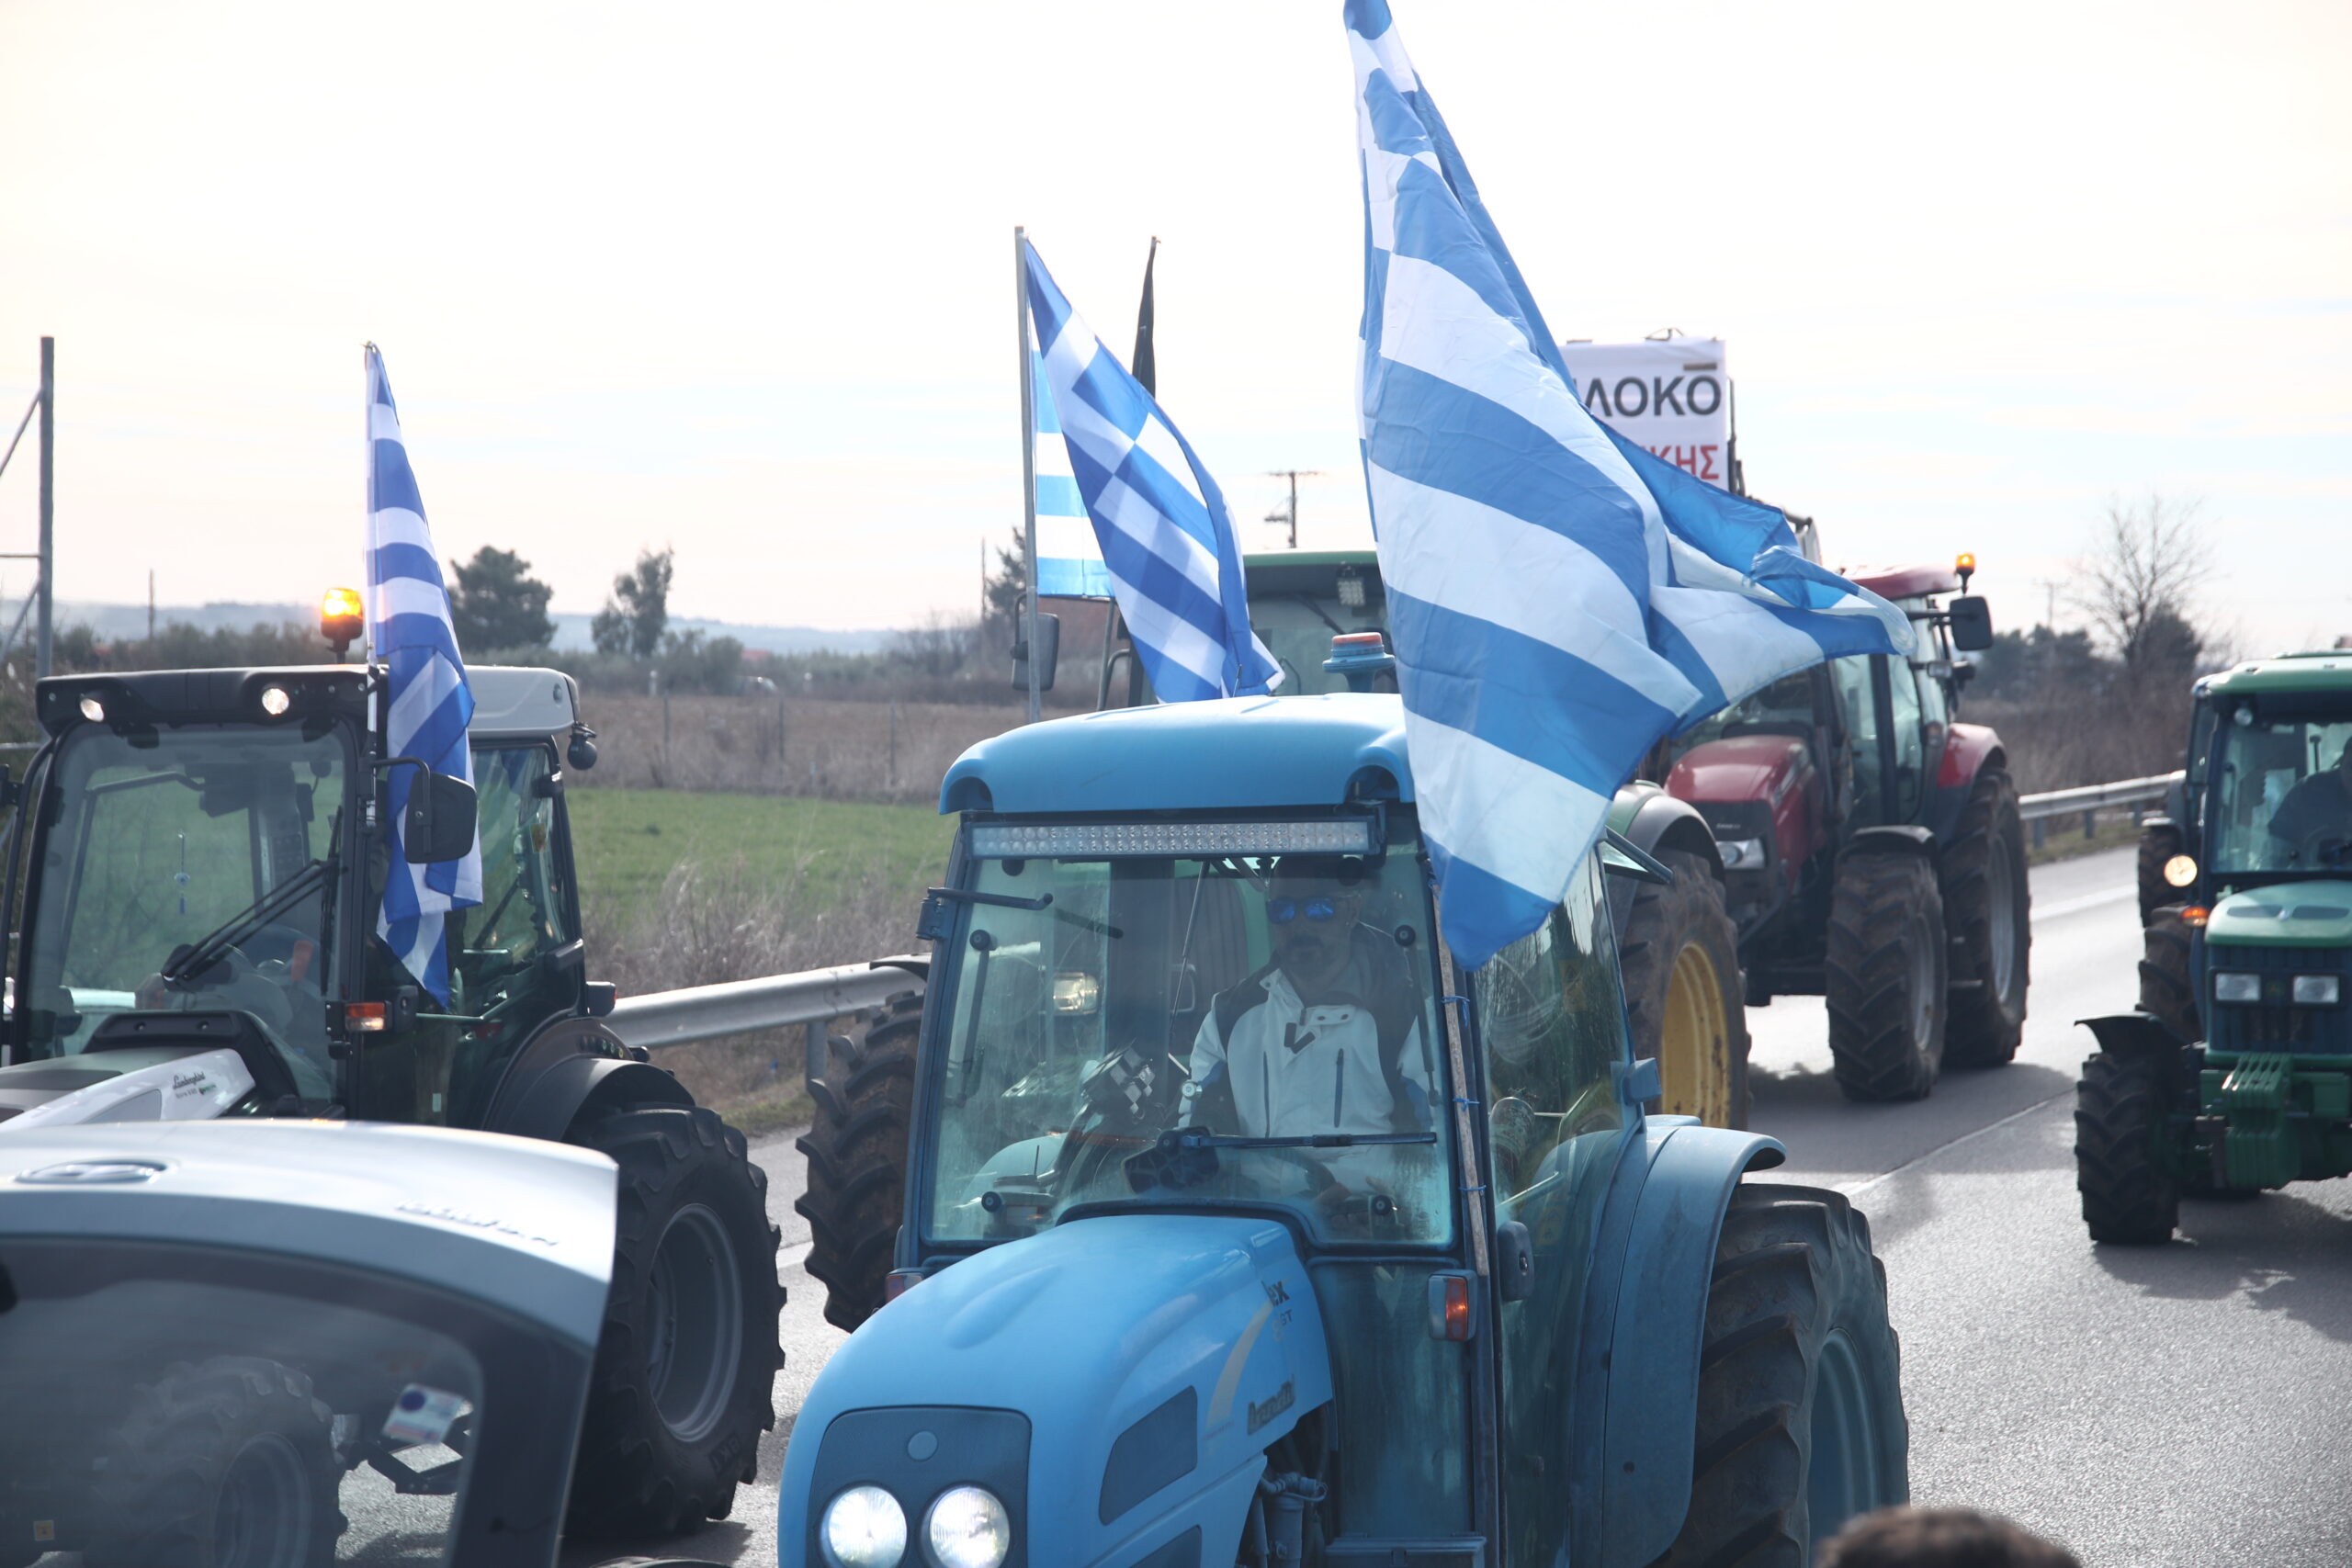 Παραμένουν στα μπλόκα οι αγρότες – Λ. Αυγενάκης: Δεν είμαστε απέναντι αλλά στην ίδια πλευρά της όχθης